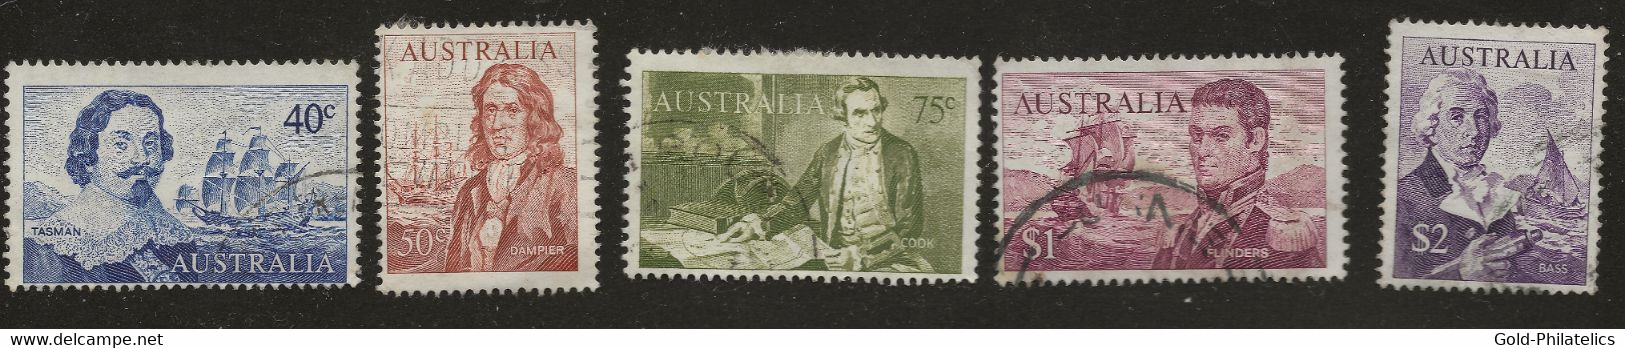 AUSTRALIA - 1966 Navigators. SG 398-402 Mi 374-478 40c - $2 Used - Used Stamps